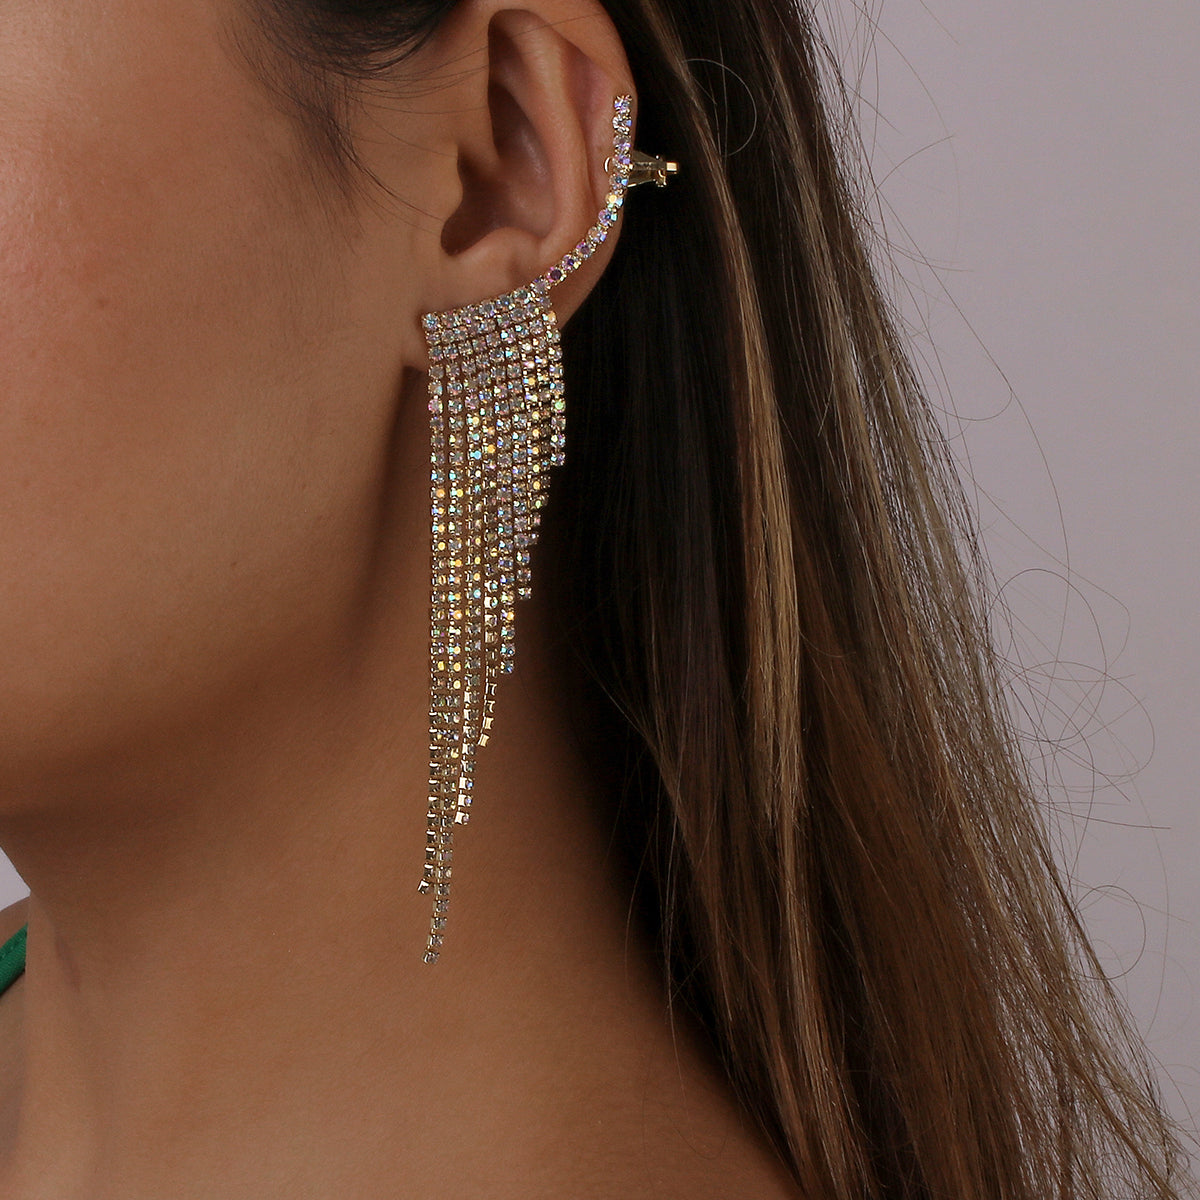 Luxury Rhinestone Long Tassel Drop Earrings medyjewelry